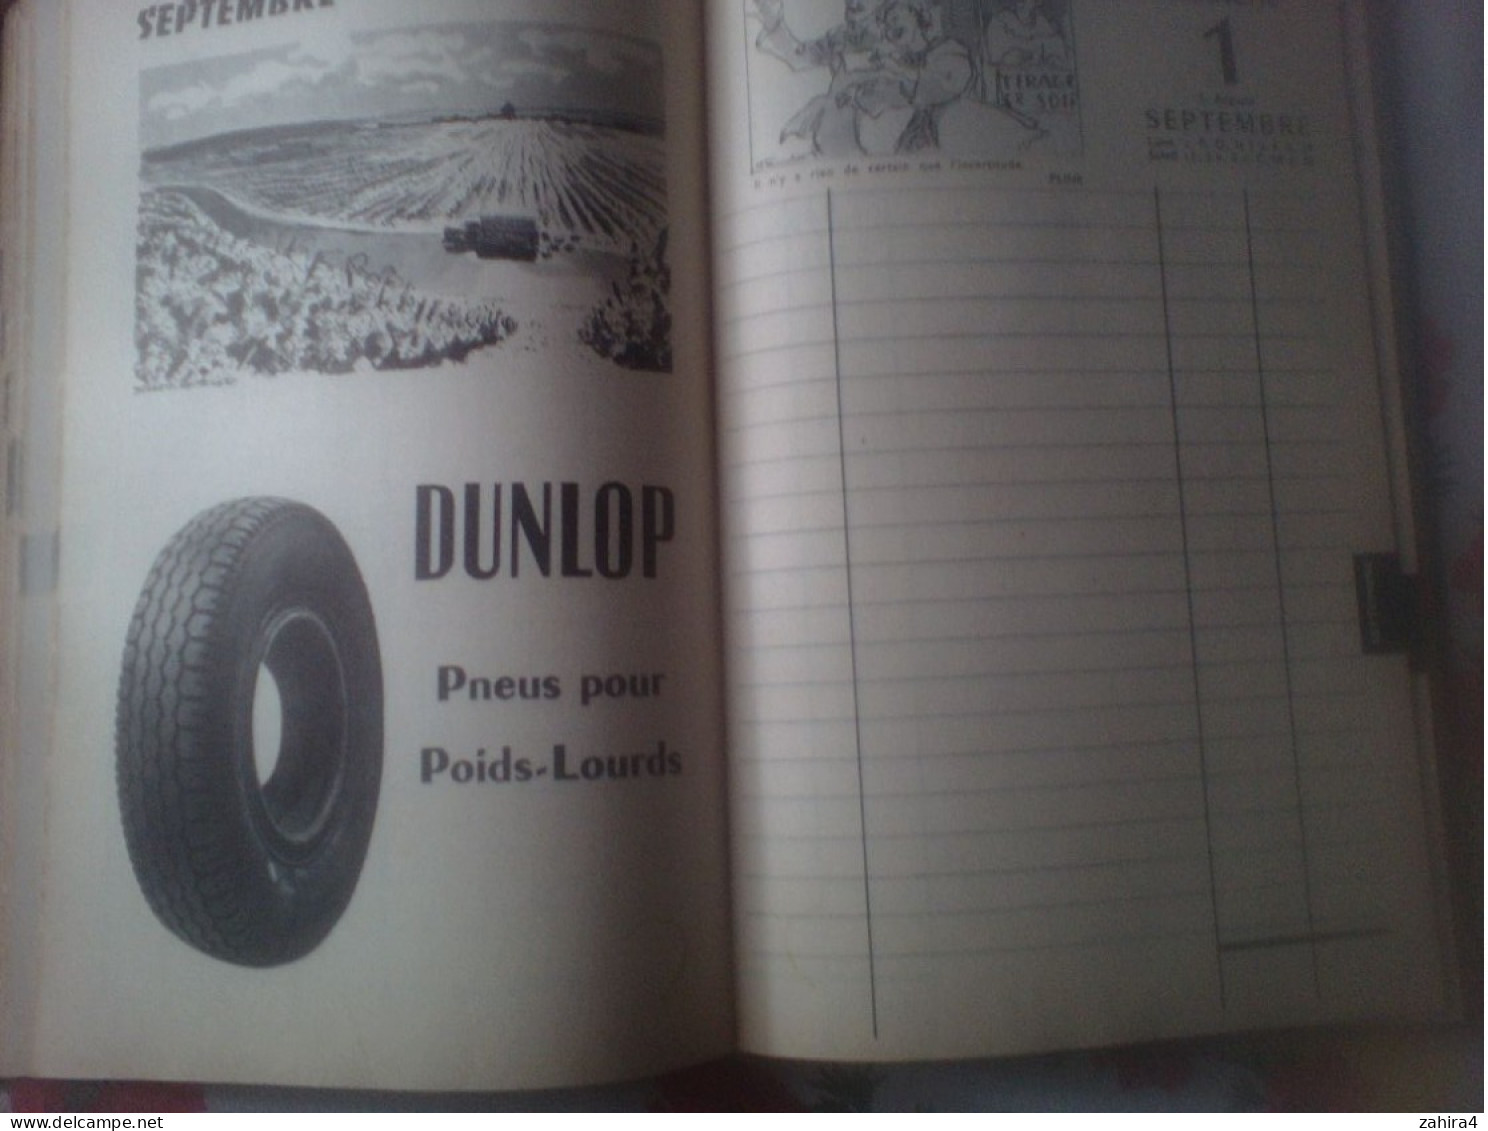 Agenda Dunlop 1957 Montluçon Le Bourget Mantes le Jolie - Queques manque 1 au 4 janvier Nombreux écrits Pneus